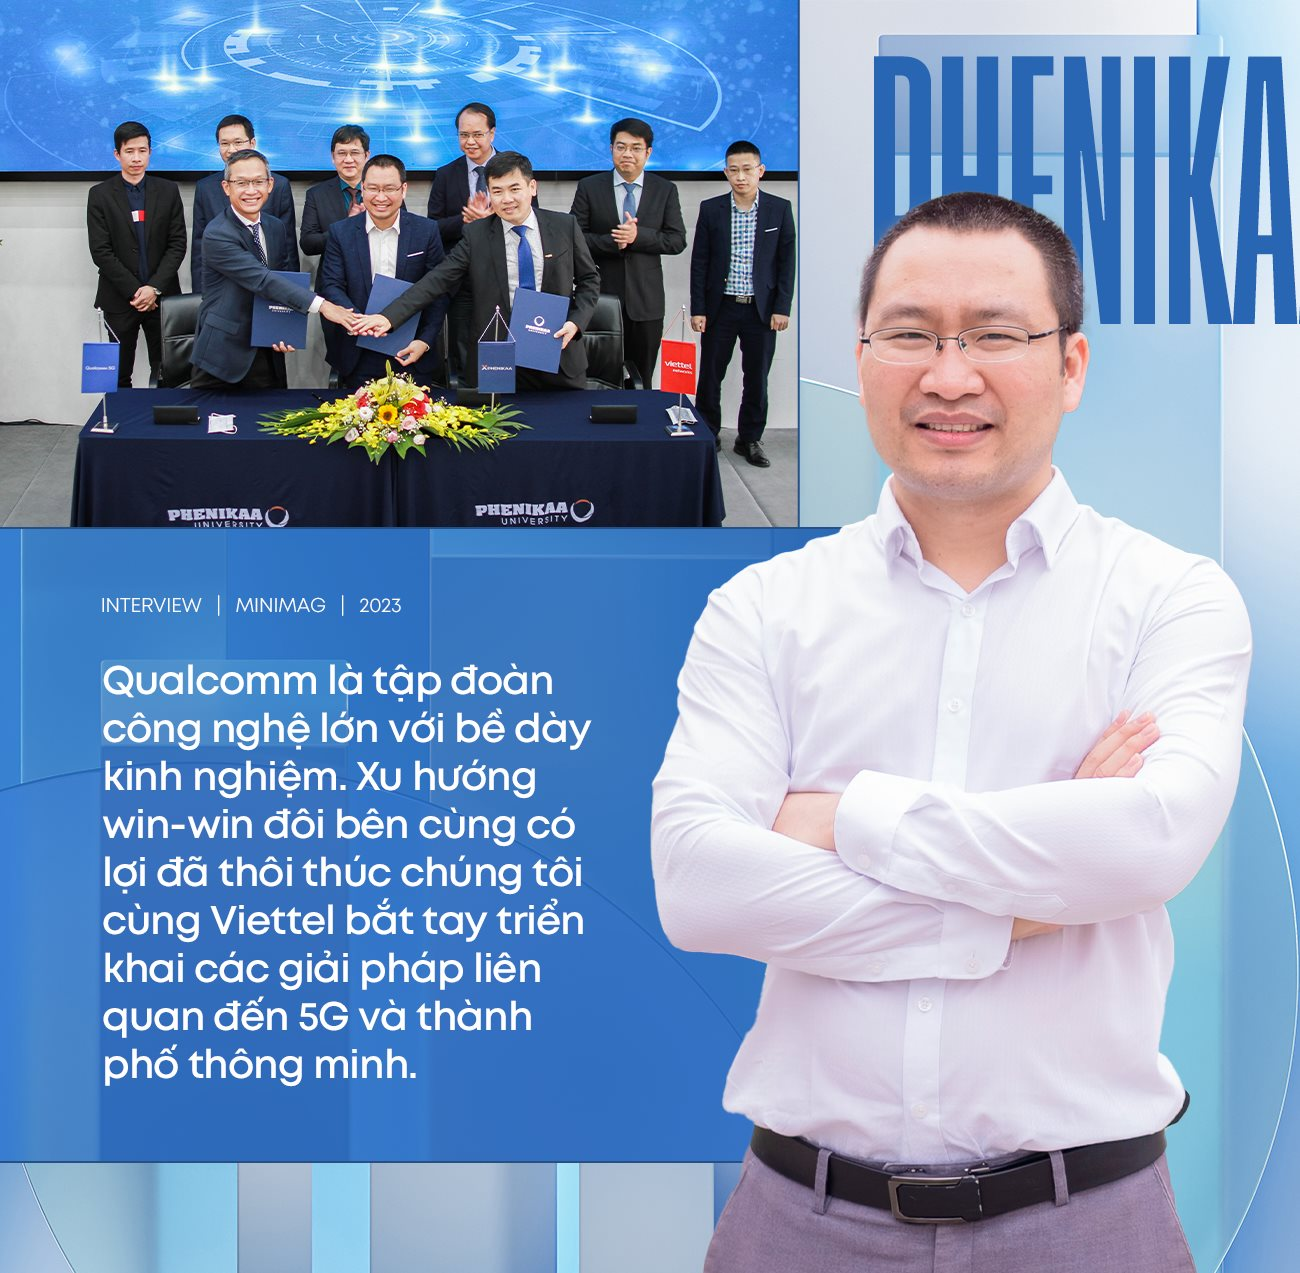 Đằng sau màn hợp tác Phenikaa-Qualcomm: Tham vọng tạo ra các sản phẩm ‘Make in Vietnam’, dồn nhiều tâm sức vào dự án xe tự lái - Ảnh 4.